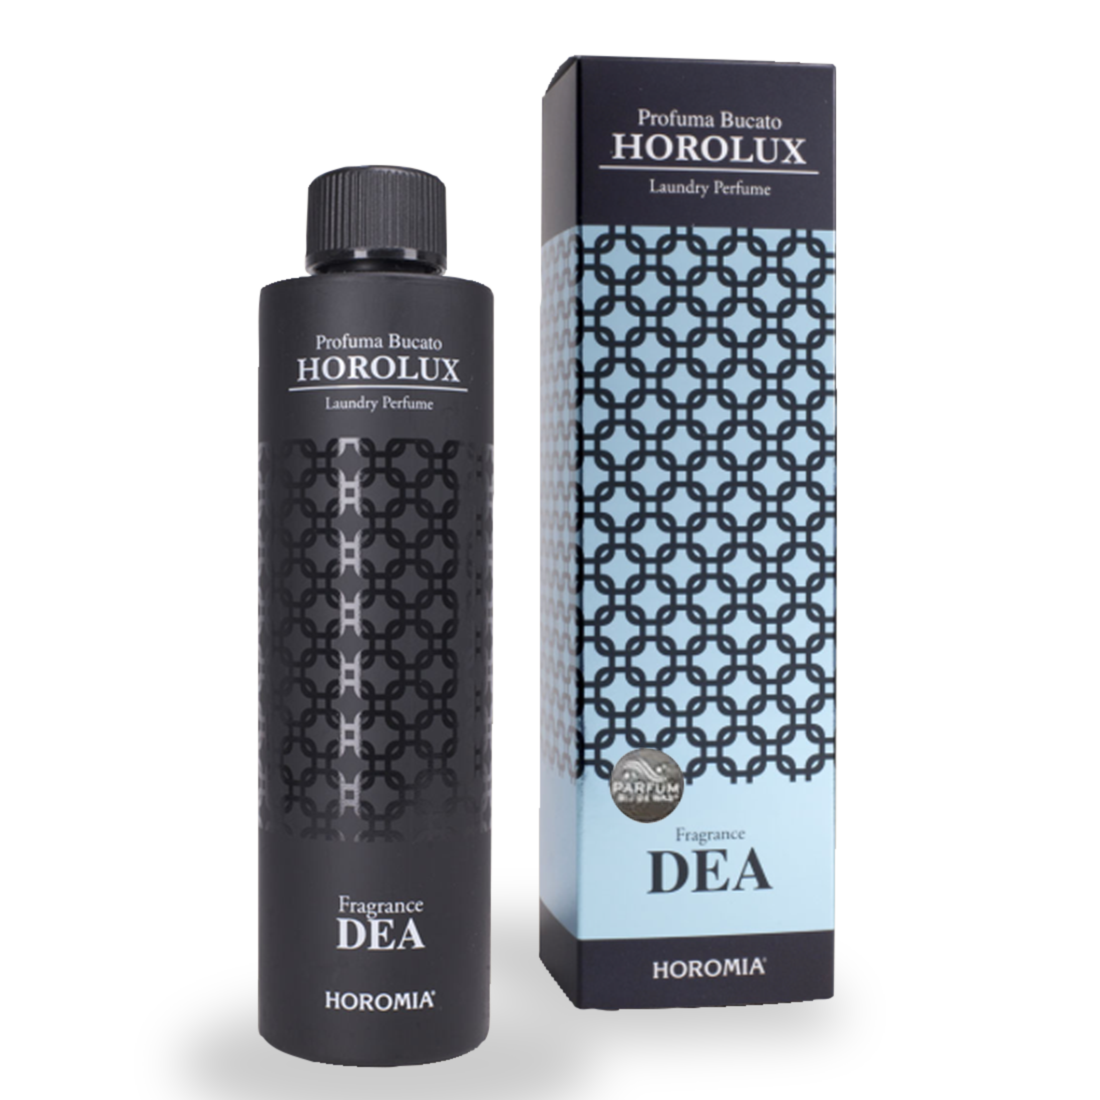 Horolux DEA 300ml - Horomia wasparfum